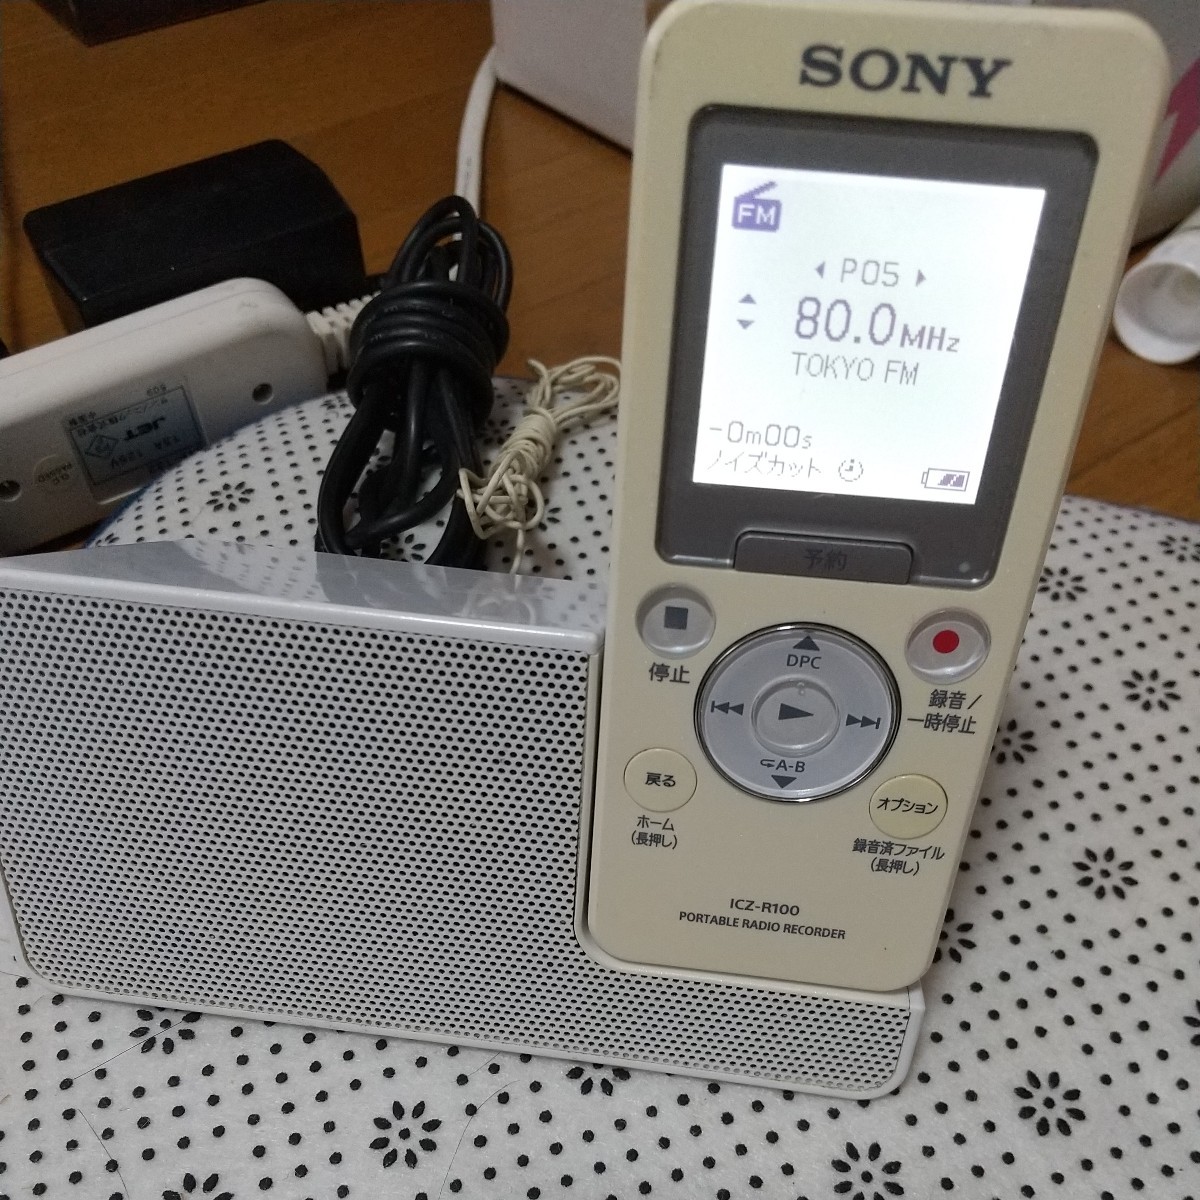 【中古品】ポータブルラジオ SONY ICZ-R100 レコーダー 完動品　ソニー ICレコーダー